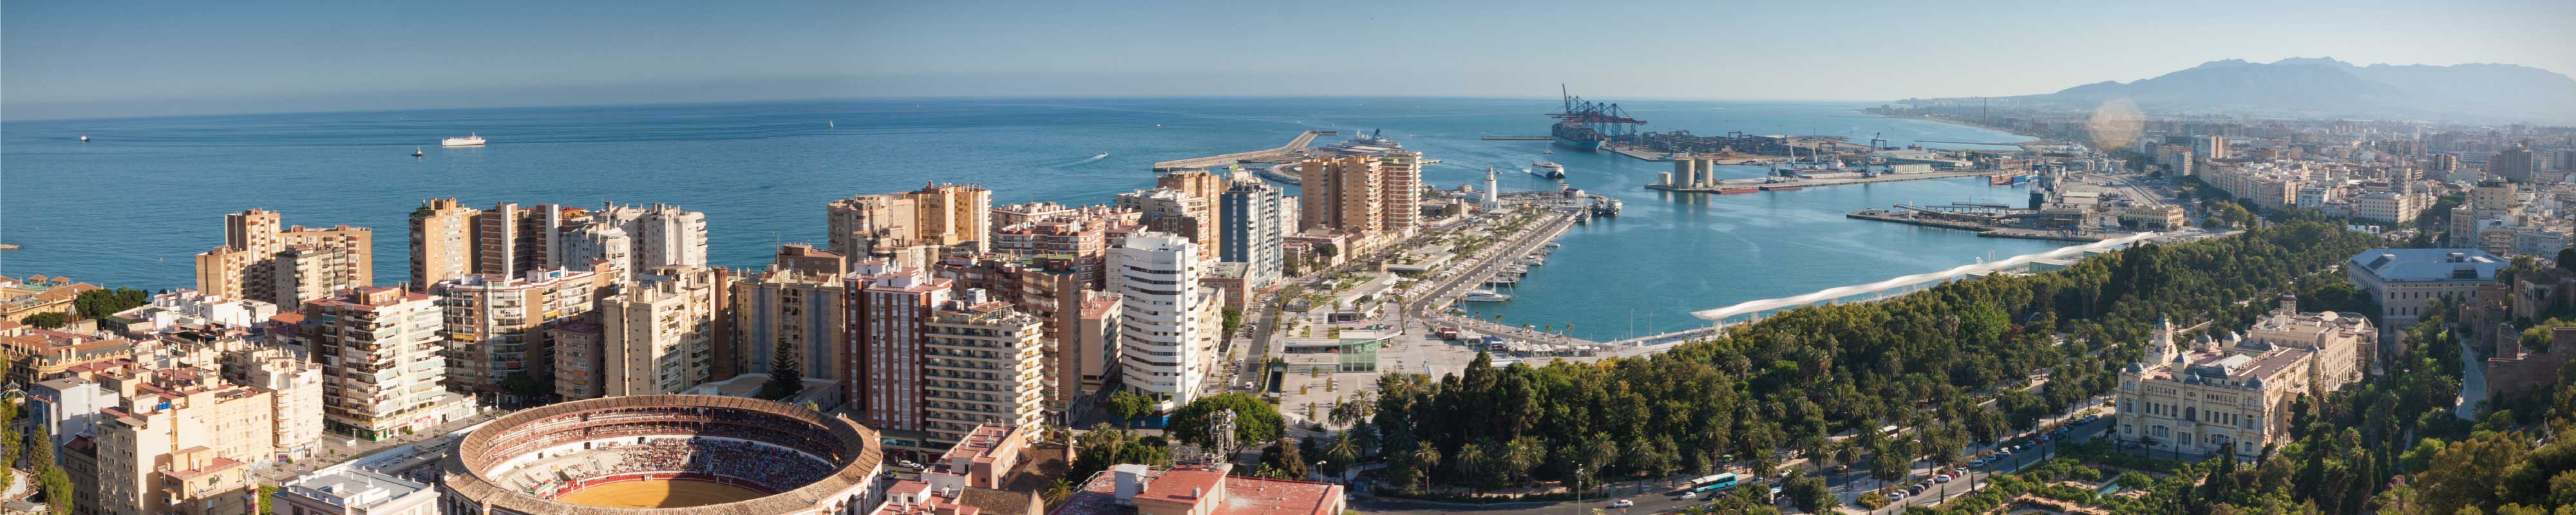 Consigna Equipaje | centro de la ciudad de Málaga en Málaga - Nannybag